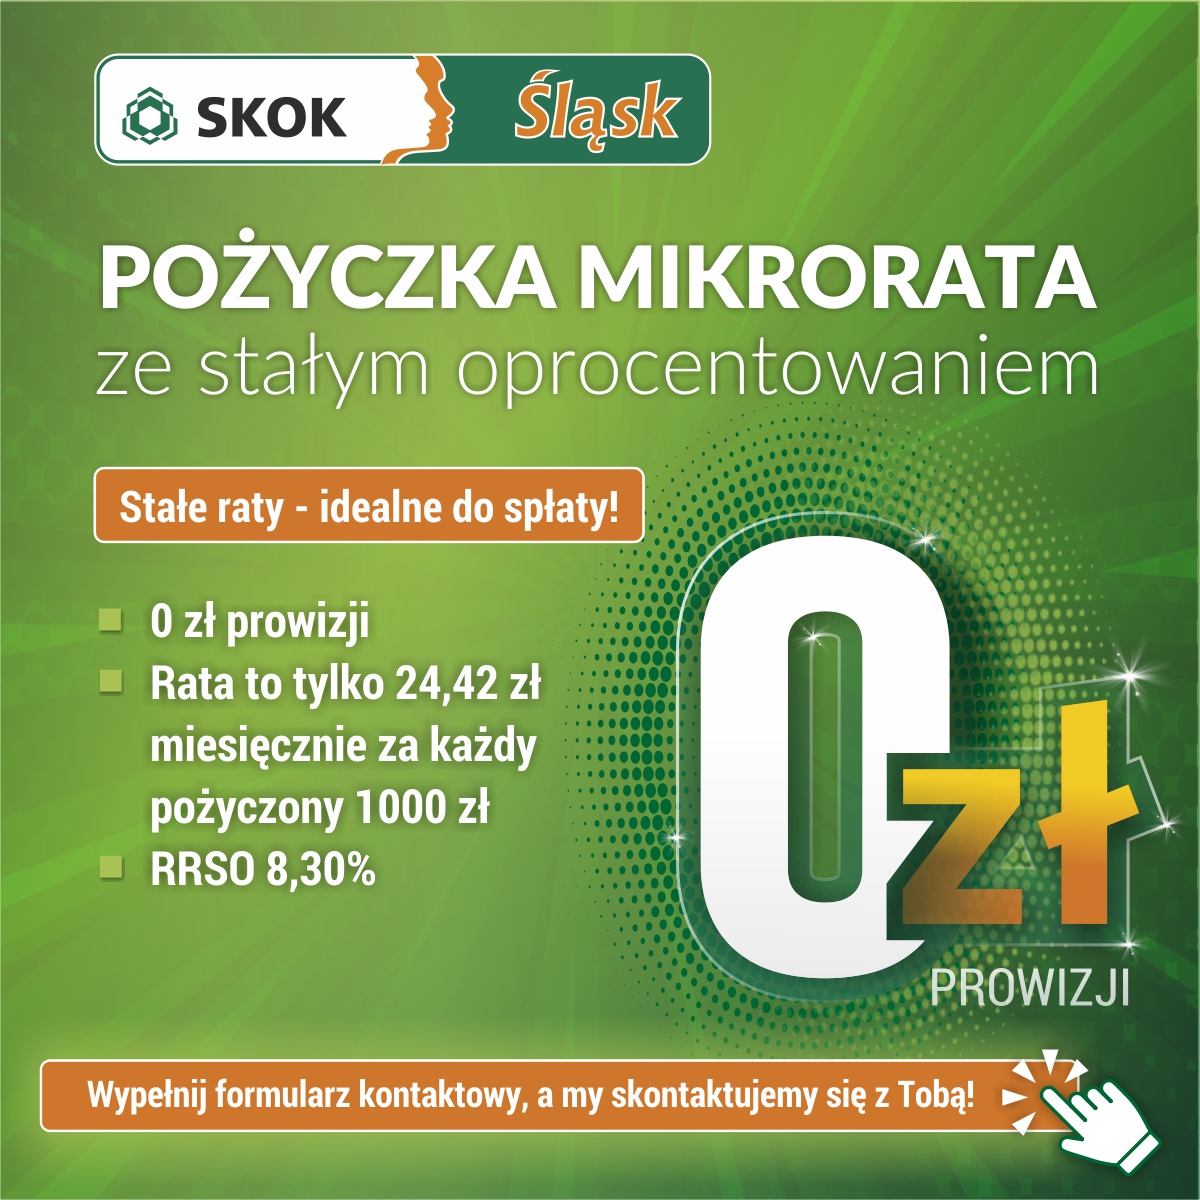 2022-05-09 - skok-slask-pozyczka0-1200x1200